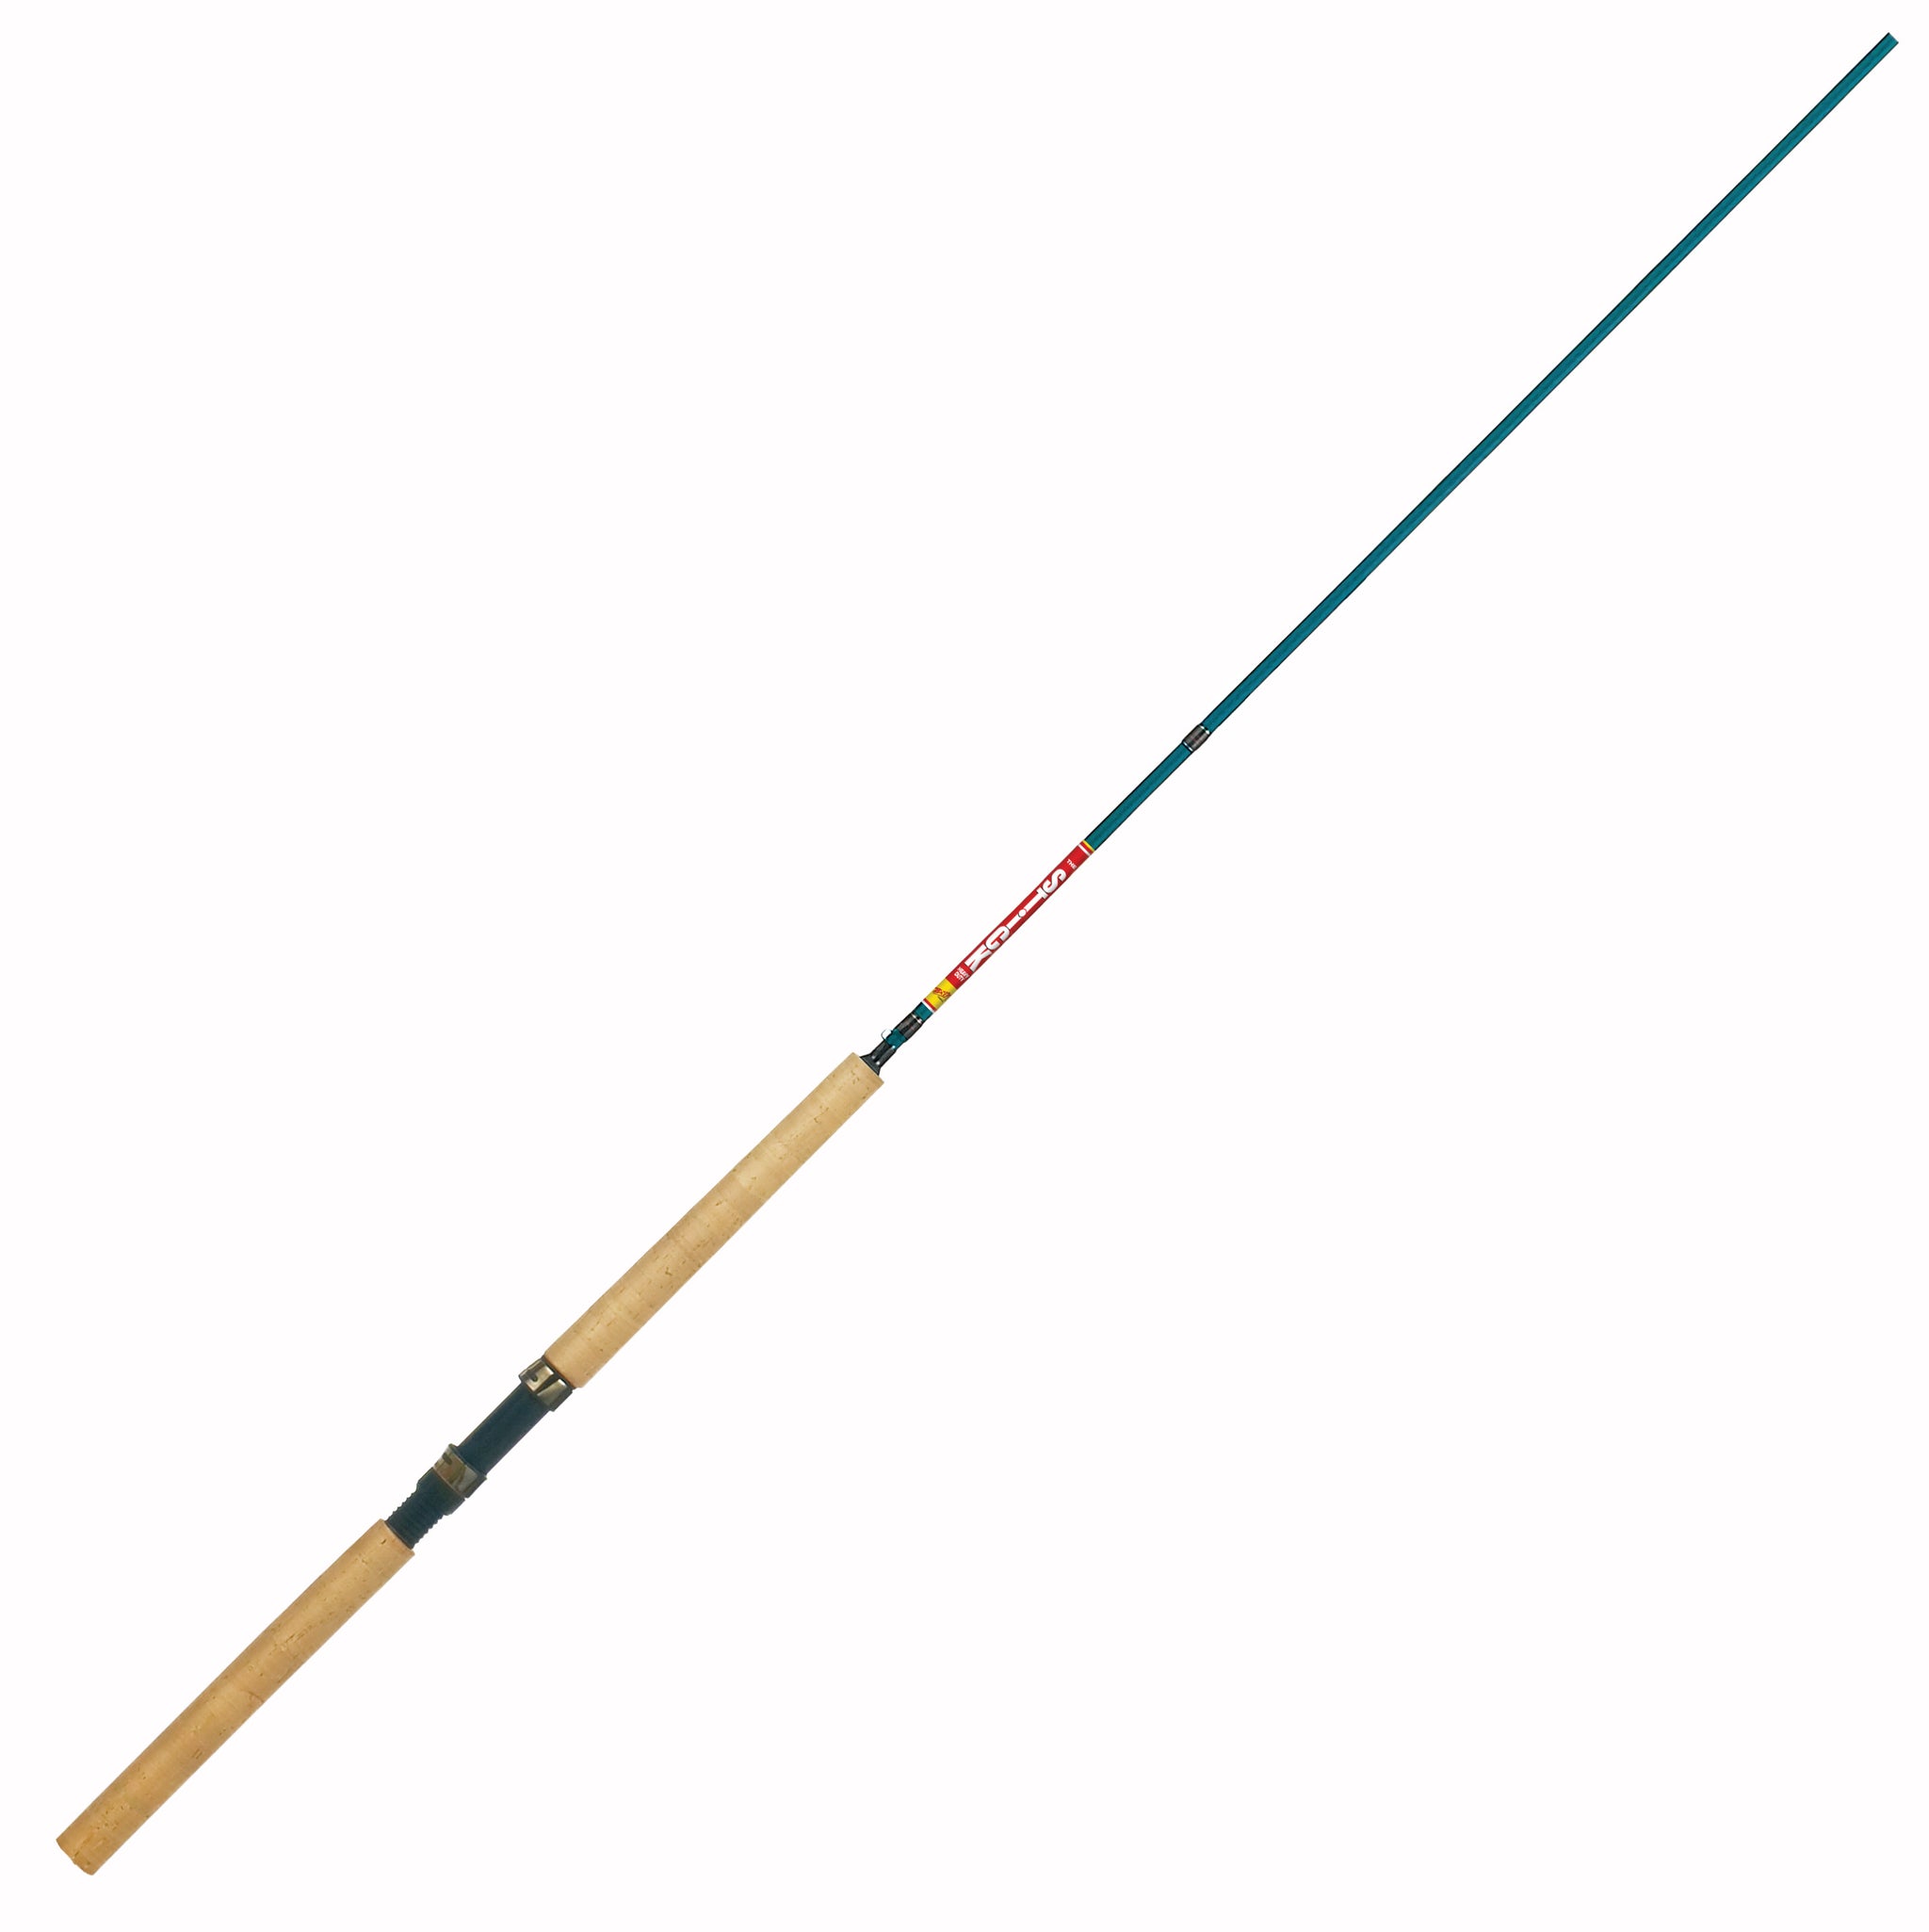 Buy Favorite Fishing Spinning Rod Balance Online at desertcartCyprus